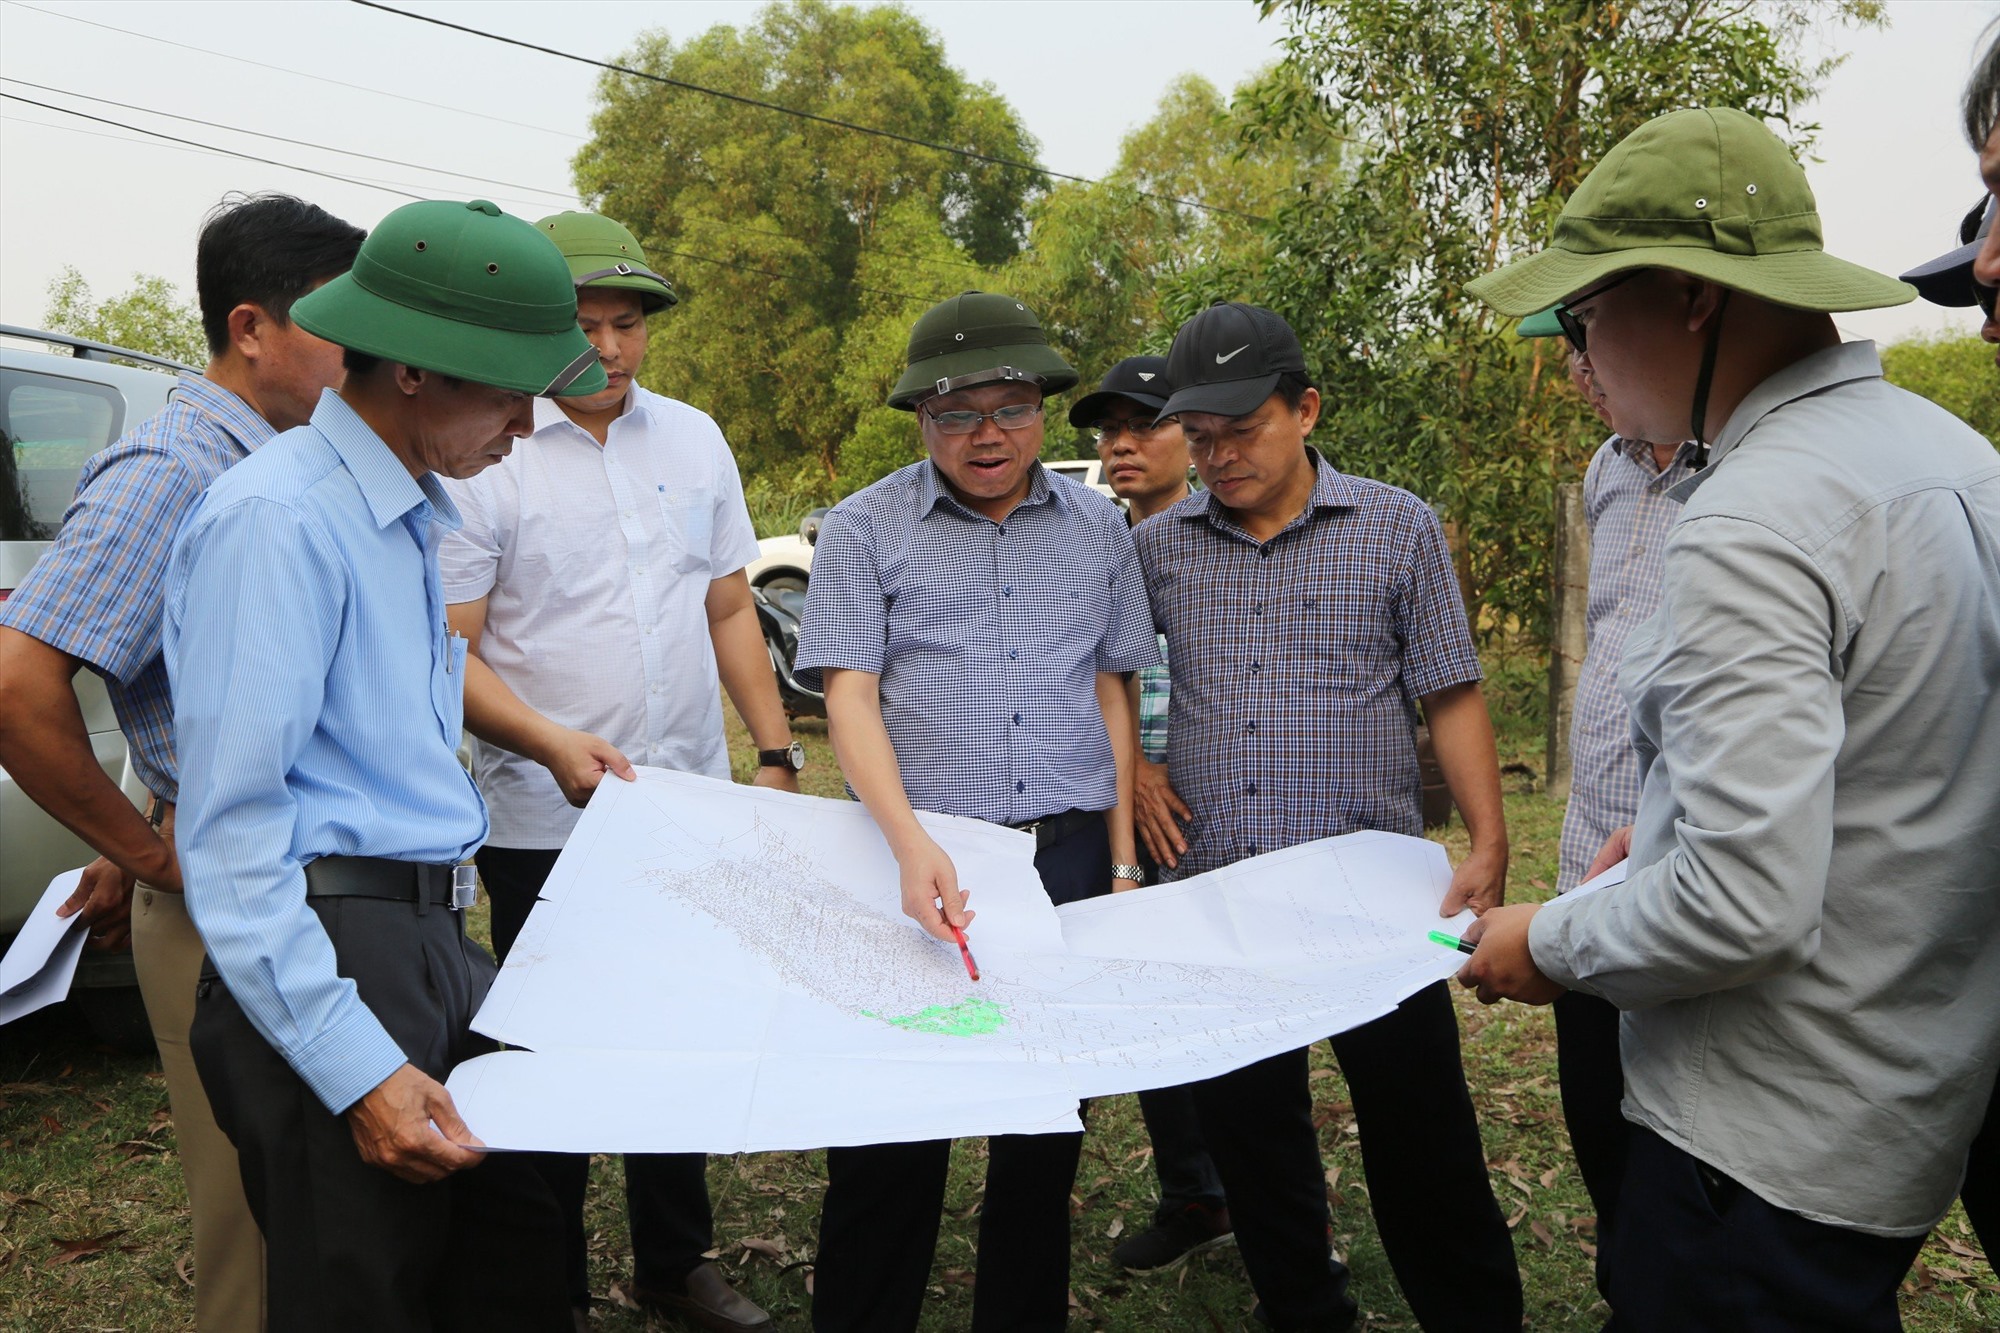 Phó Chủ tịch UBND tỉnh Lê Đức Tiến kiểm tra hiện trạng và trên bản đồ khu đất có 21 hộ dân đang sinh sống tại xã Gio Mai, huyện Gio Linh thuộc diện phải tái định cư - Ảnh: Lê Minh